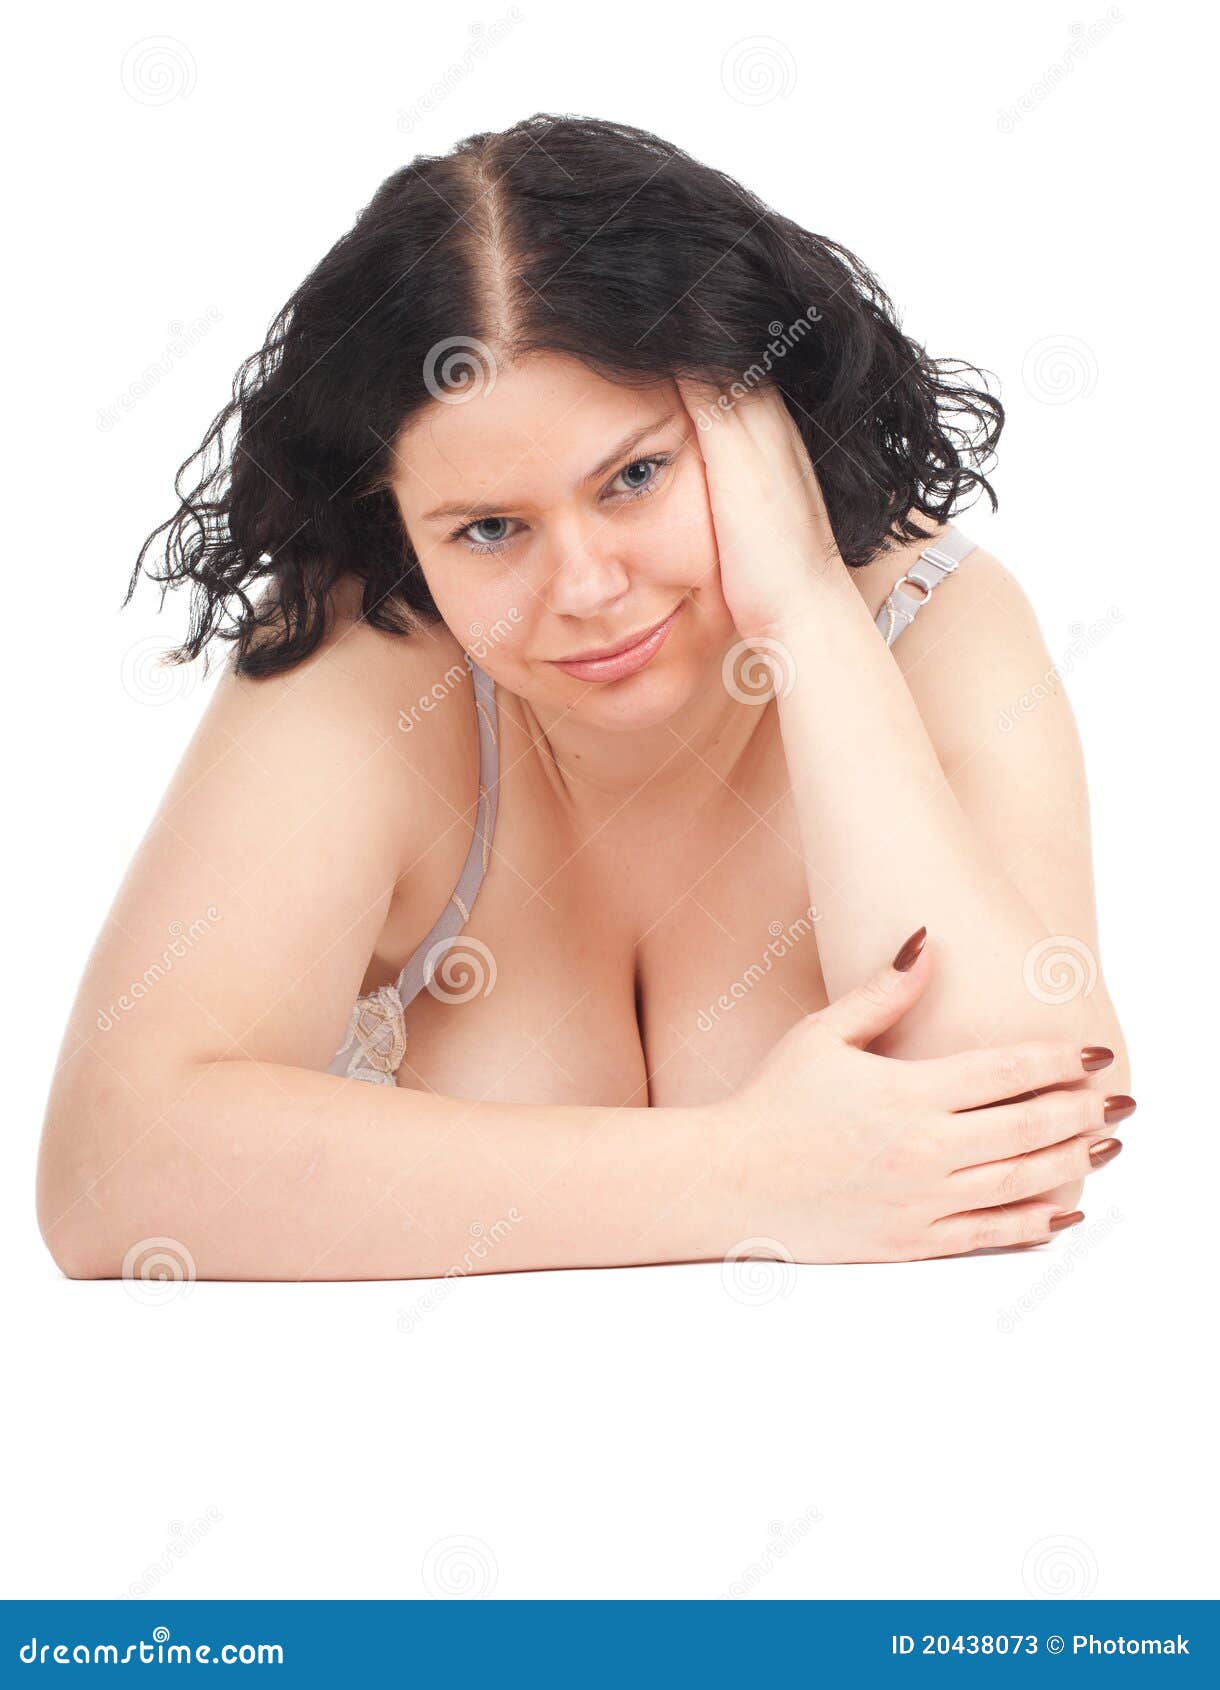 Fat woman in underwear stock image